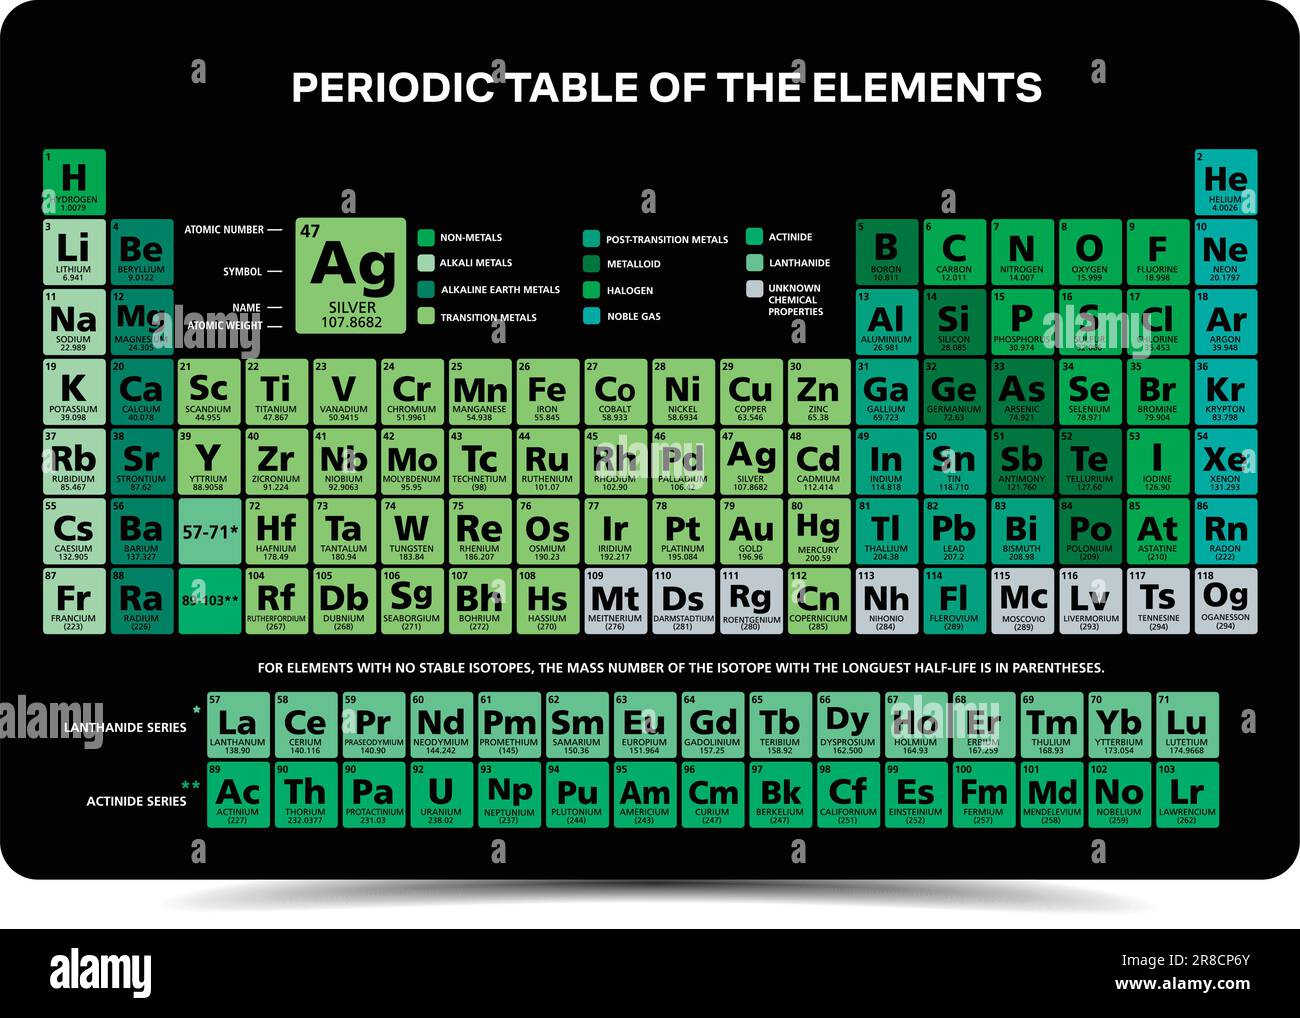 Mandeleev Periodische Tabelle der chemischen Elemente Diagrammdarstellung mehrfarbige 118-Vektorelemente in englischer Sprache Stock Vektor